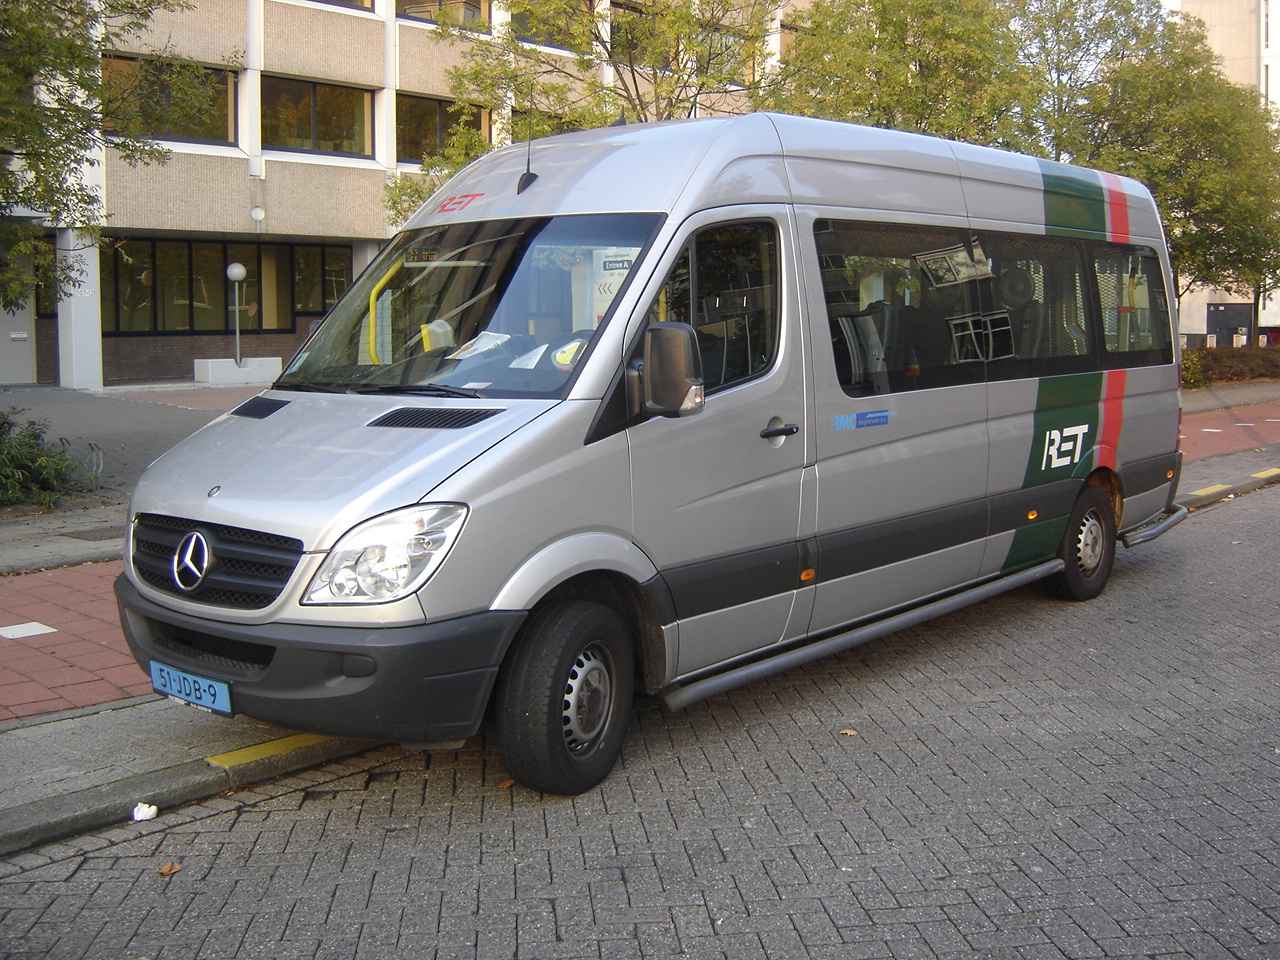 Rotterdam: RET Mercedes-Benz Sprinter Minibus | Flickr - Photo ...